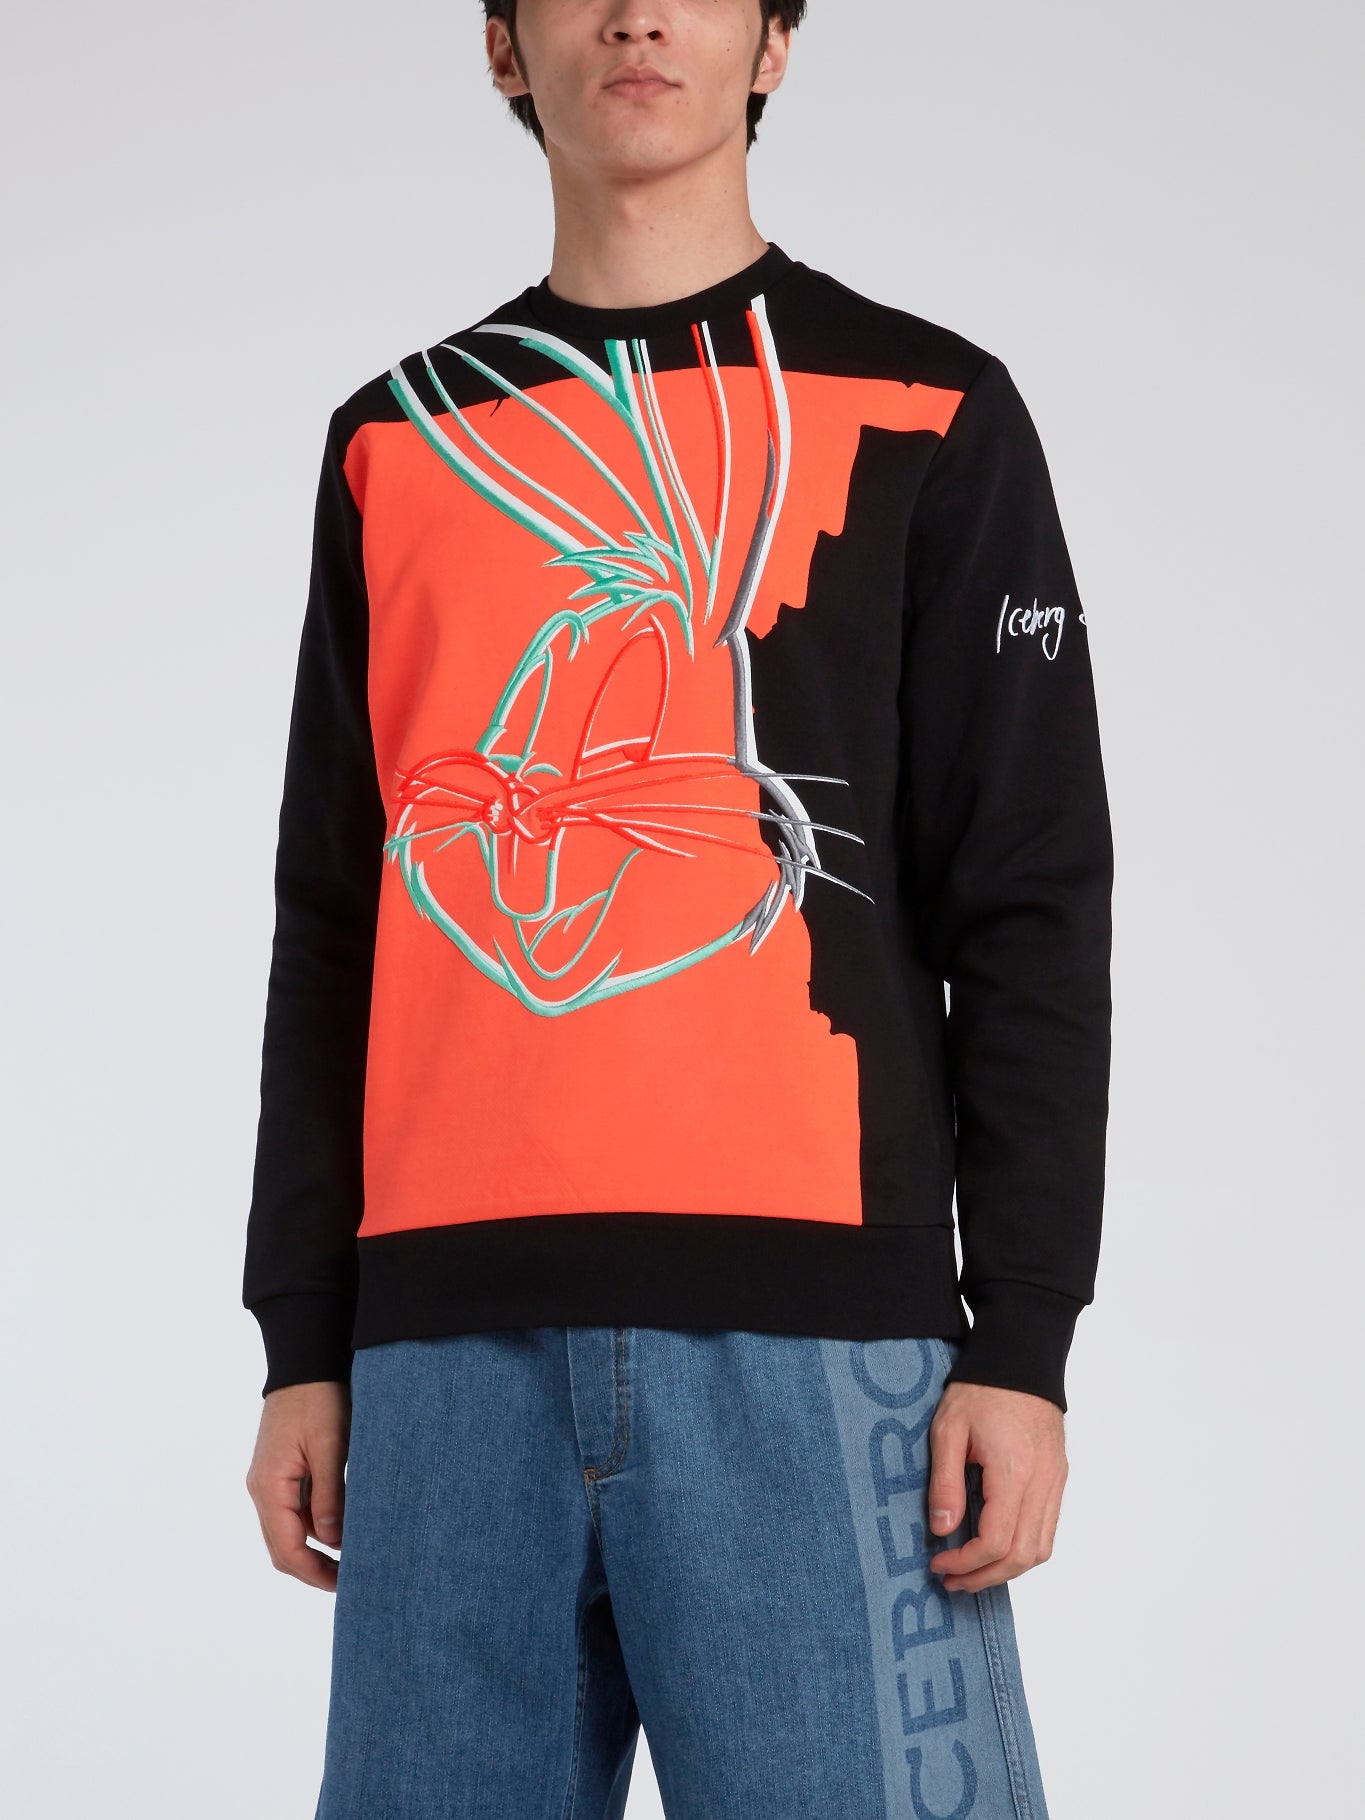 Bugs Bunny Black Crewneck Sweatshirt